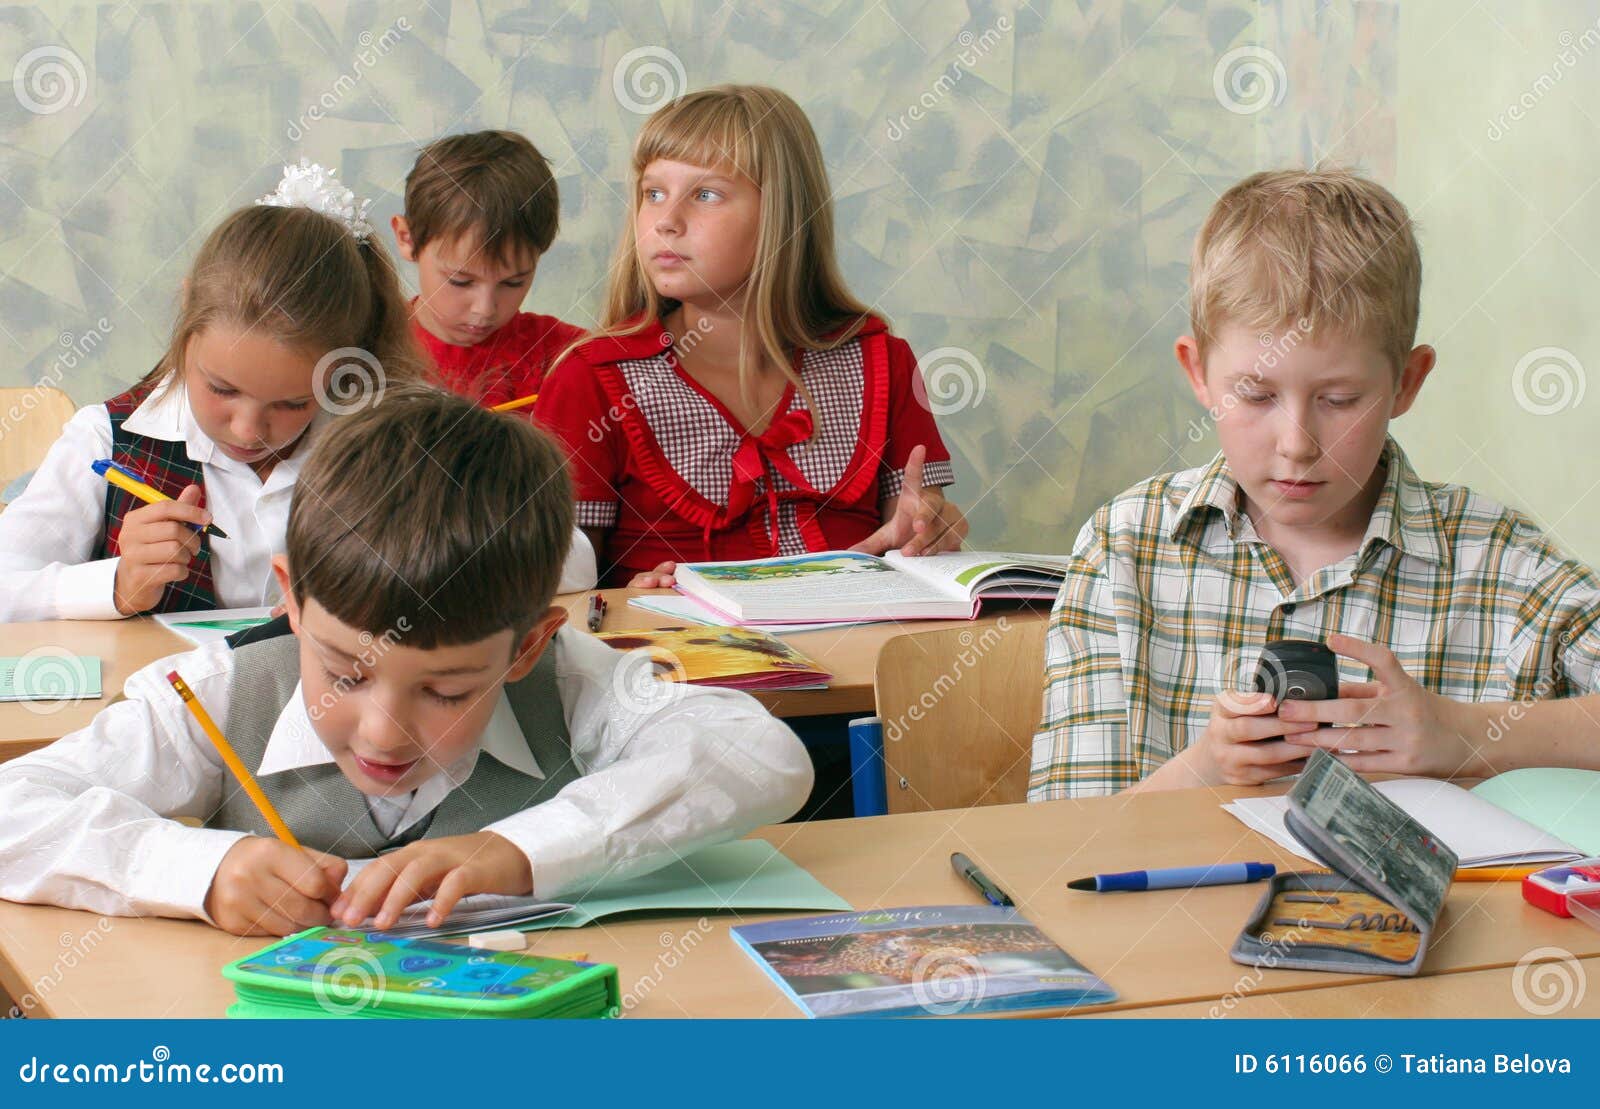 Школа нежность. Дети на уроке. Дети в школе отвлекаются. Ребенок отвлекается на уроке. Дети с мобильниками в школе.